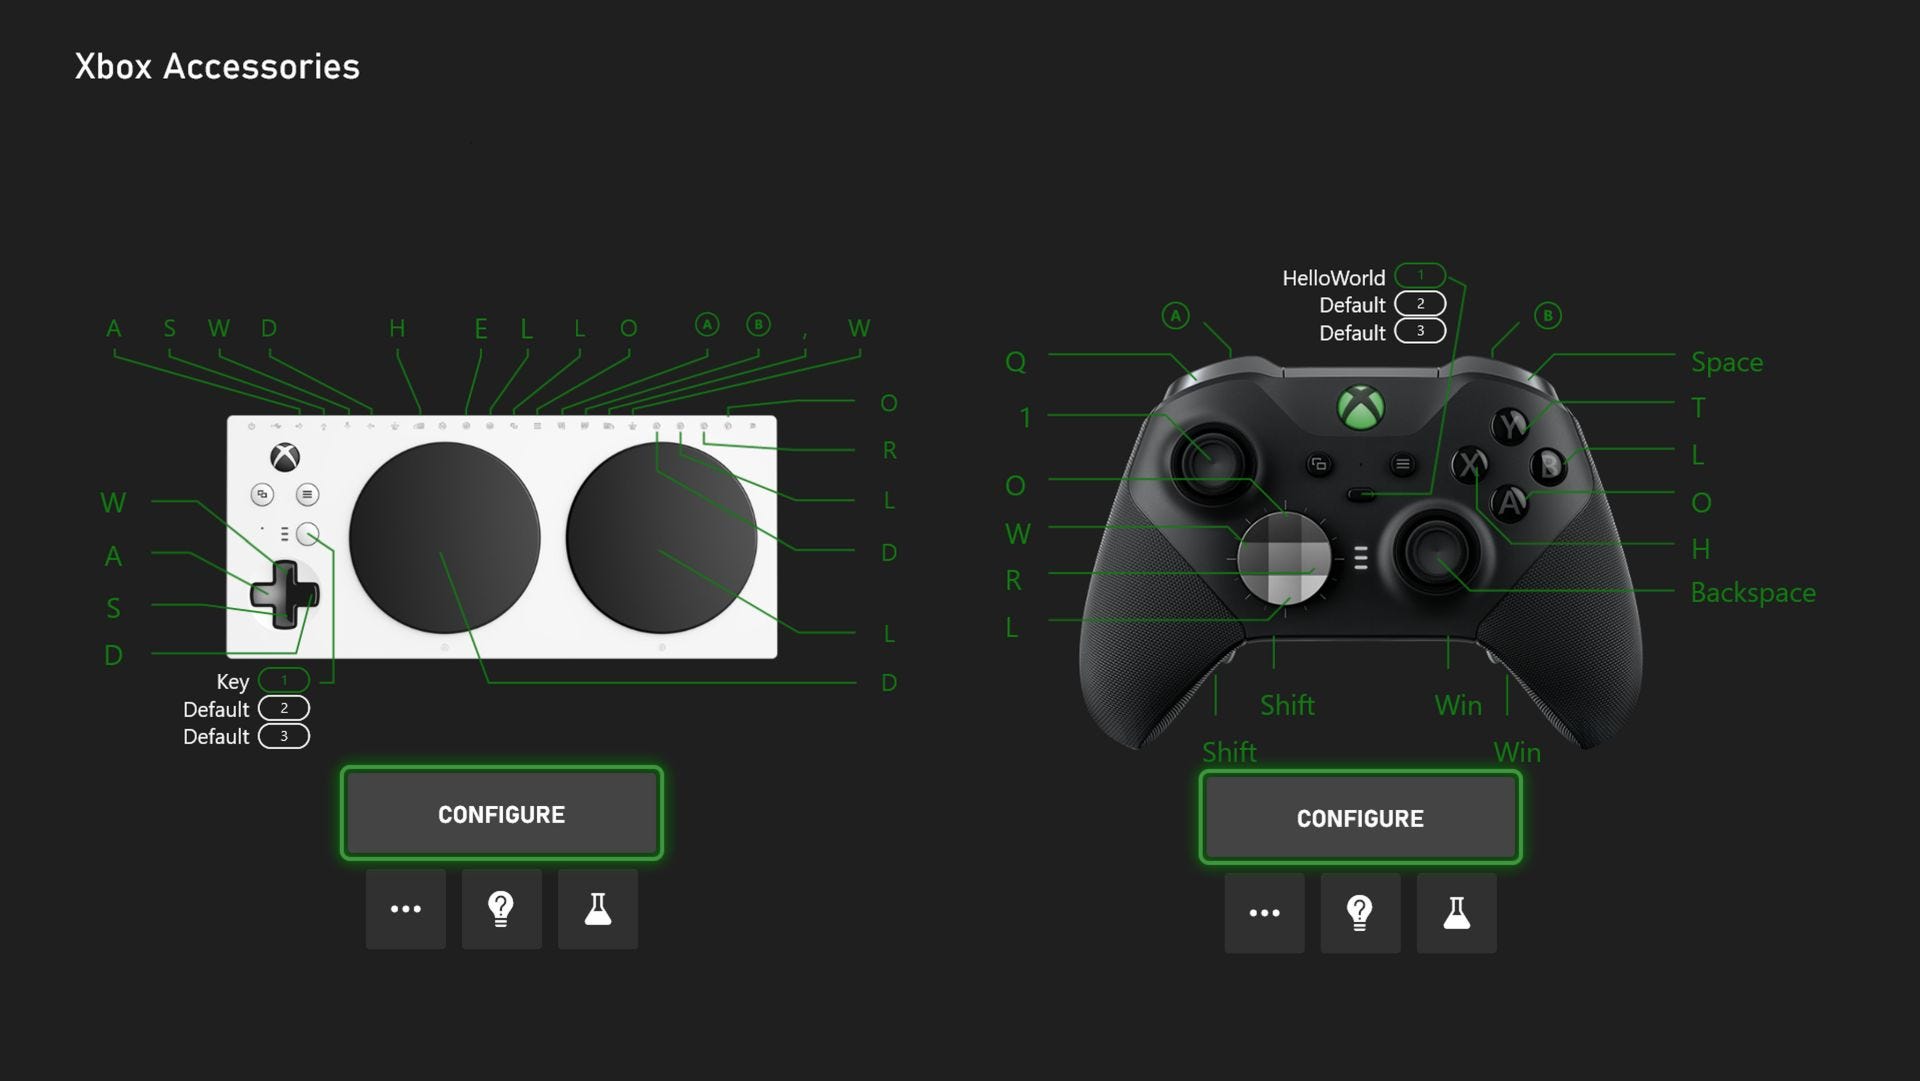 అక్టోబర్ Xbox అప్‌డేట్ ఇప్పుడు అందుబాటులోకి వచ్చింది, కంట్రోలర్‌లకు కీబోర్డ్ మ్యాపింగ్‌ను జోడిస్తుంది